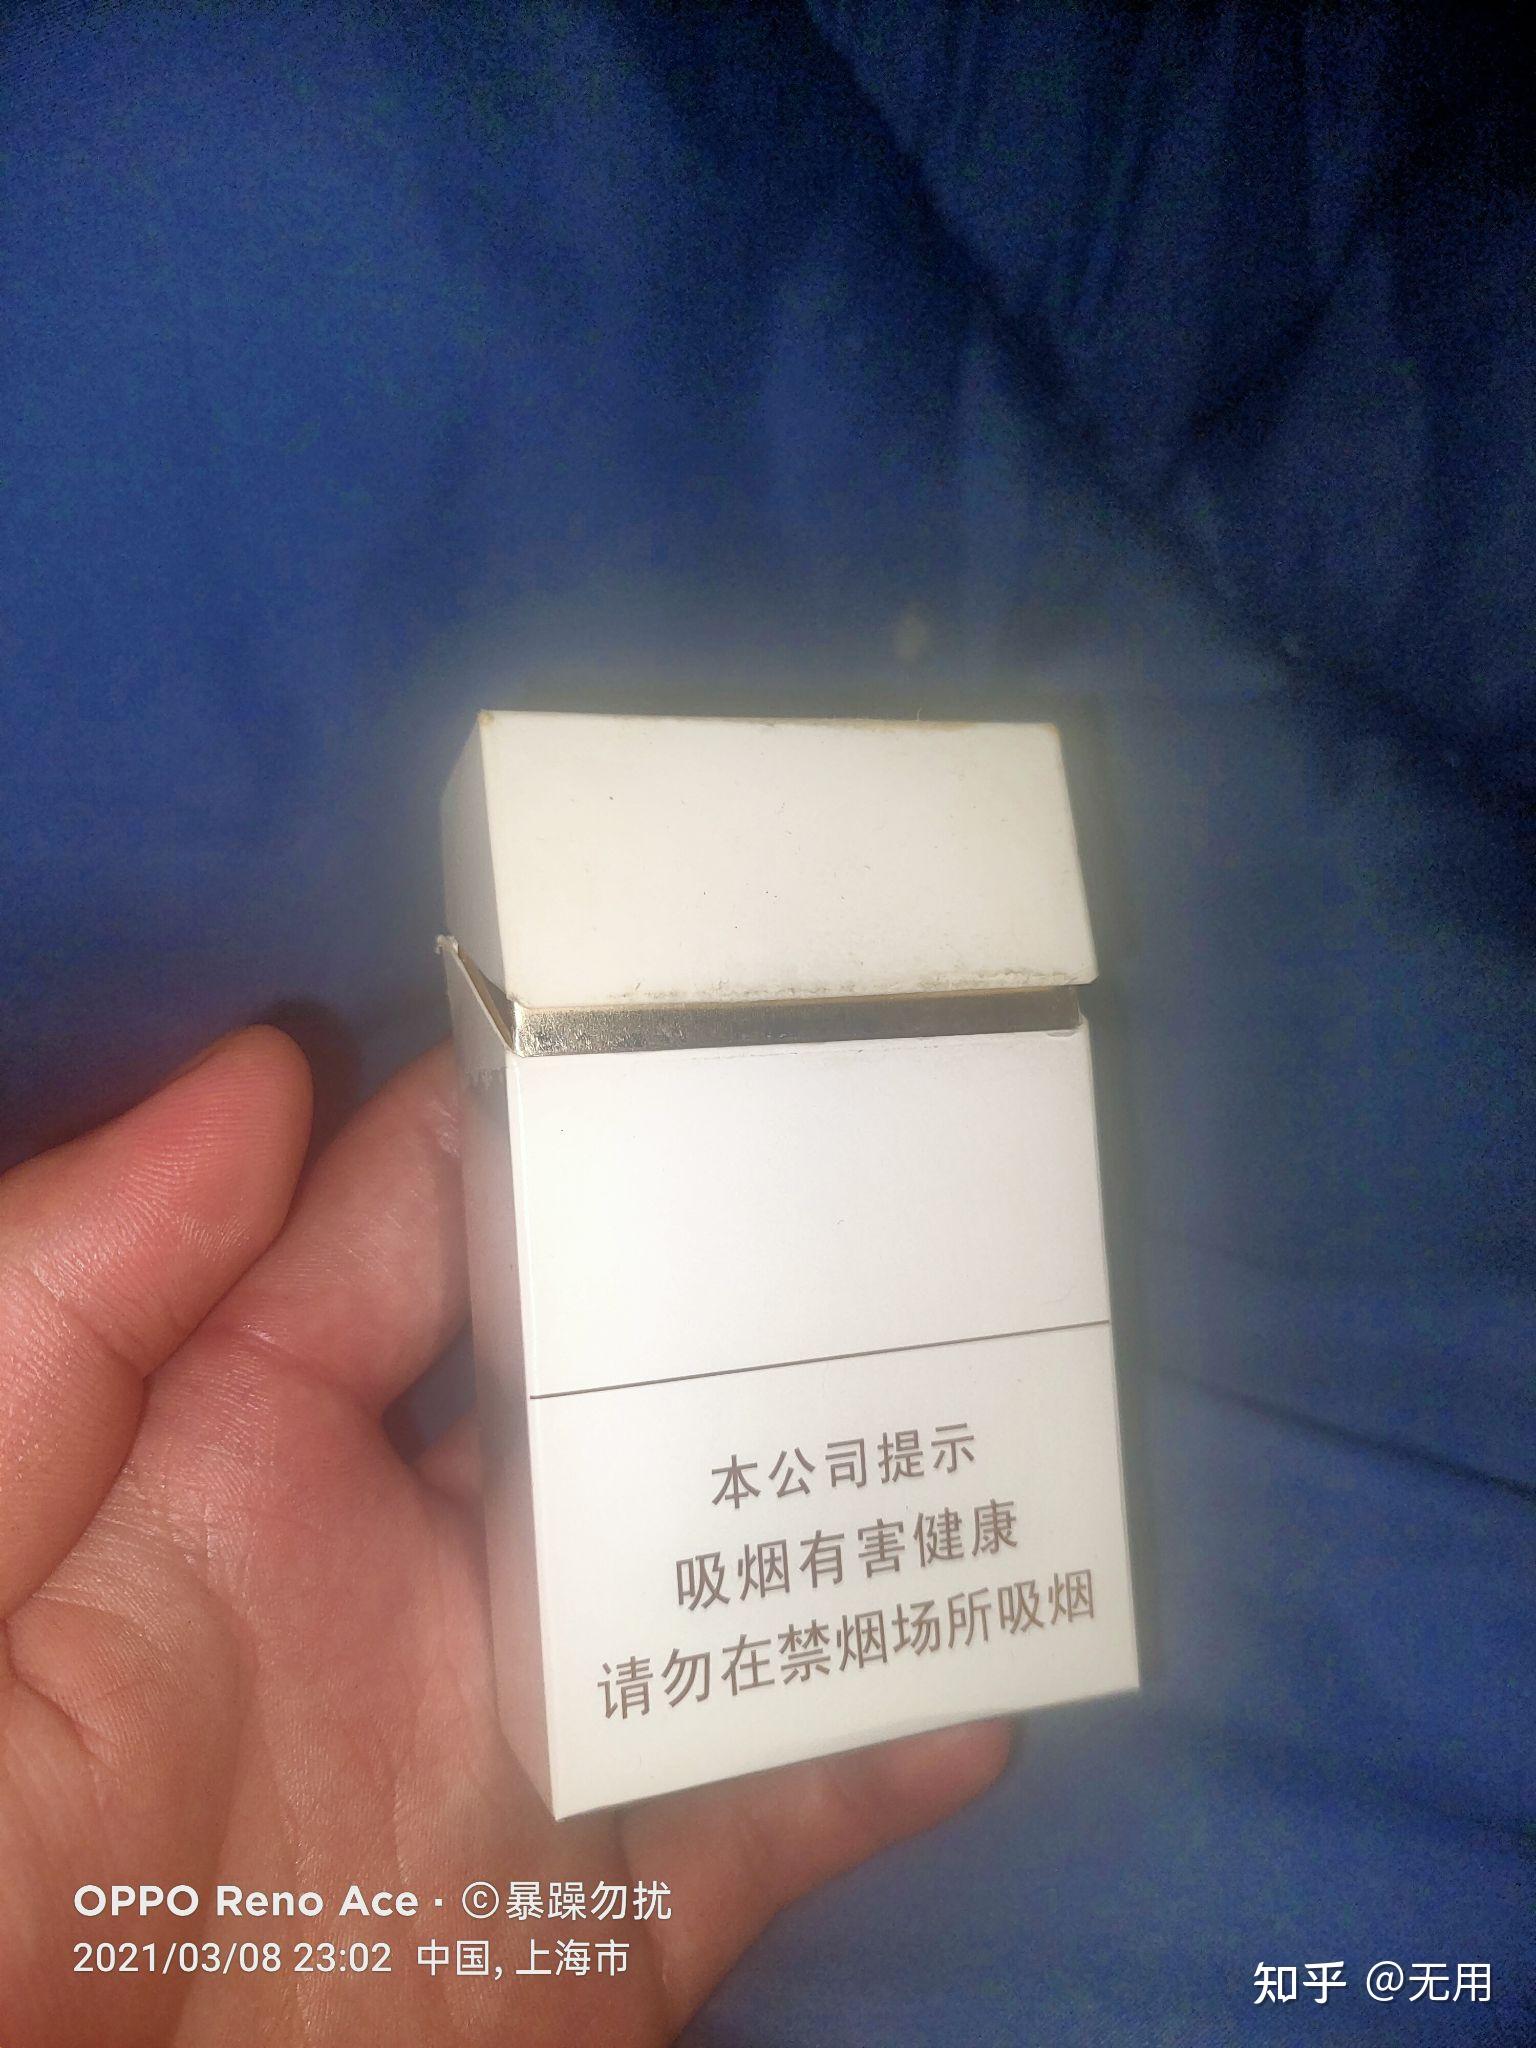 白色烟盒没有牌子金把是啥烟? 